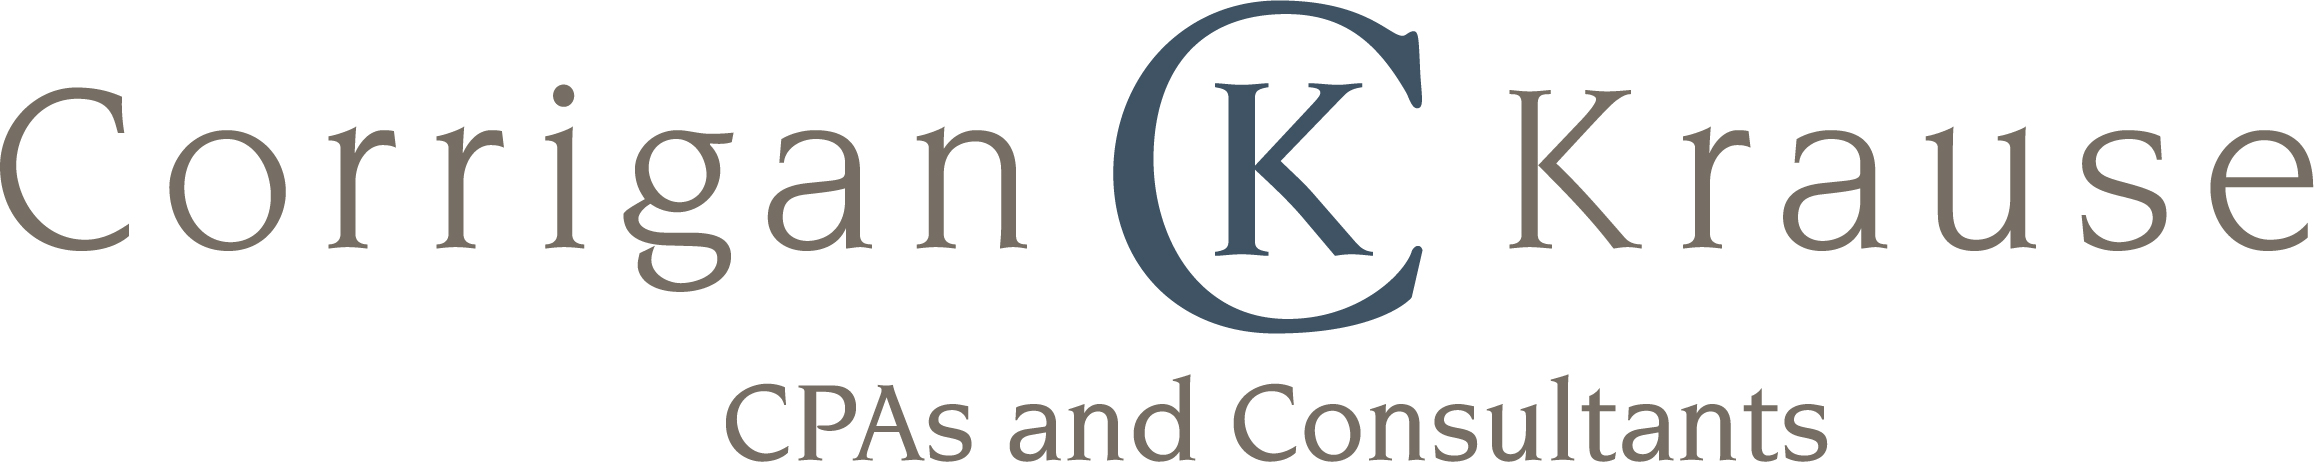 Corrigan Krause logo